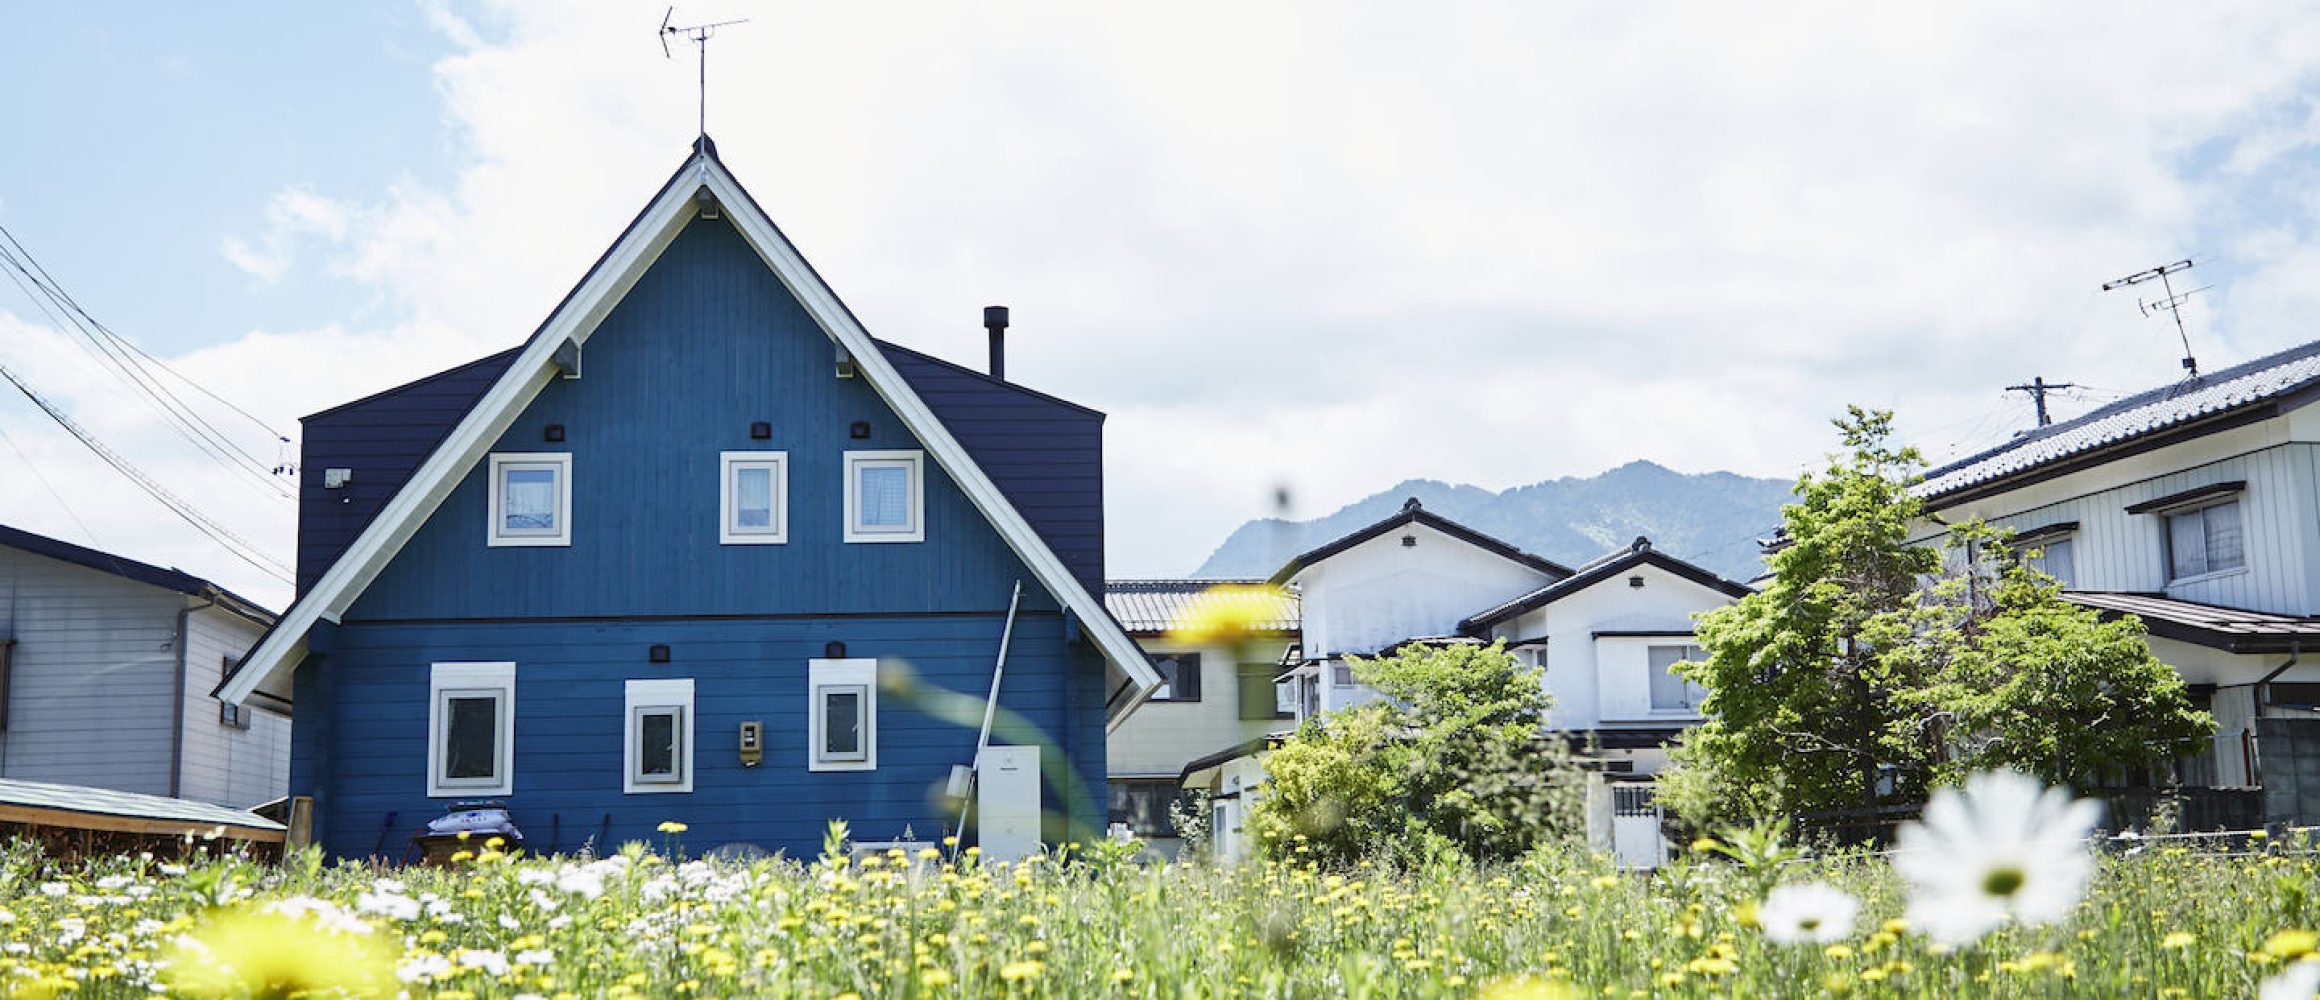 初夏の空にひと際映える、三角屋根の青い家。【BESSの家〜お宅訪問編〜 vol.8】